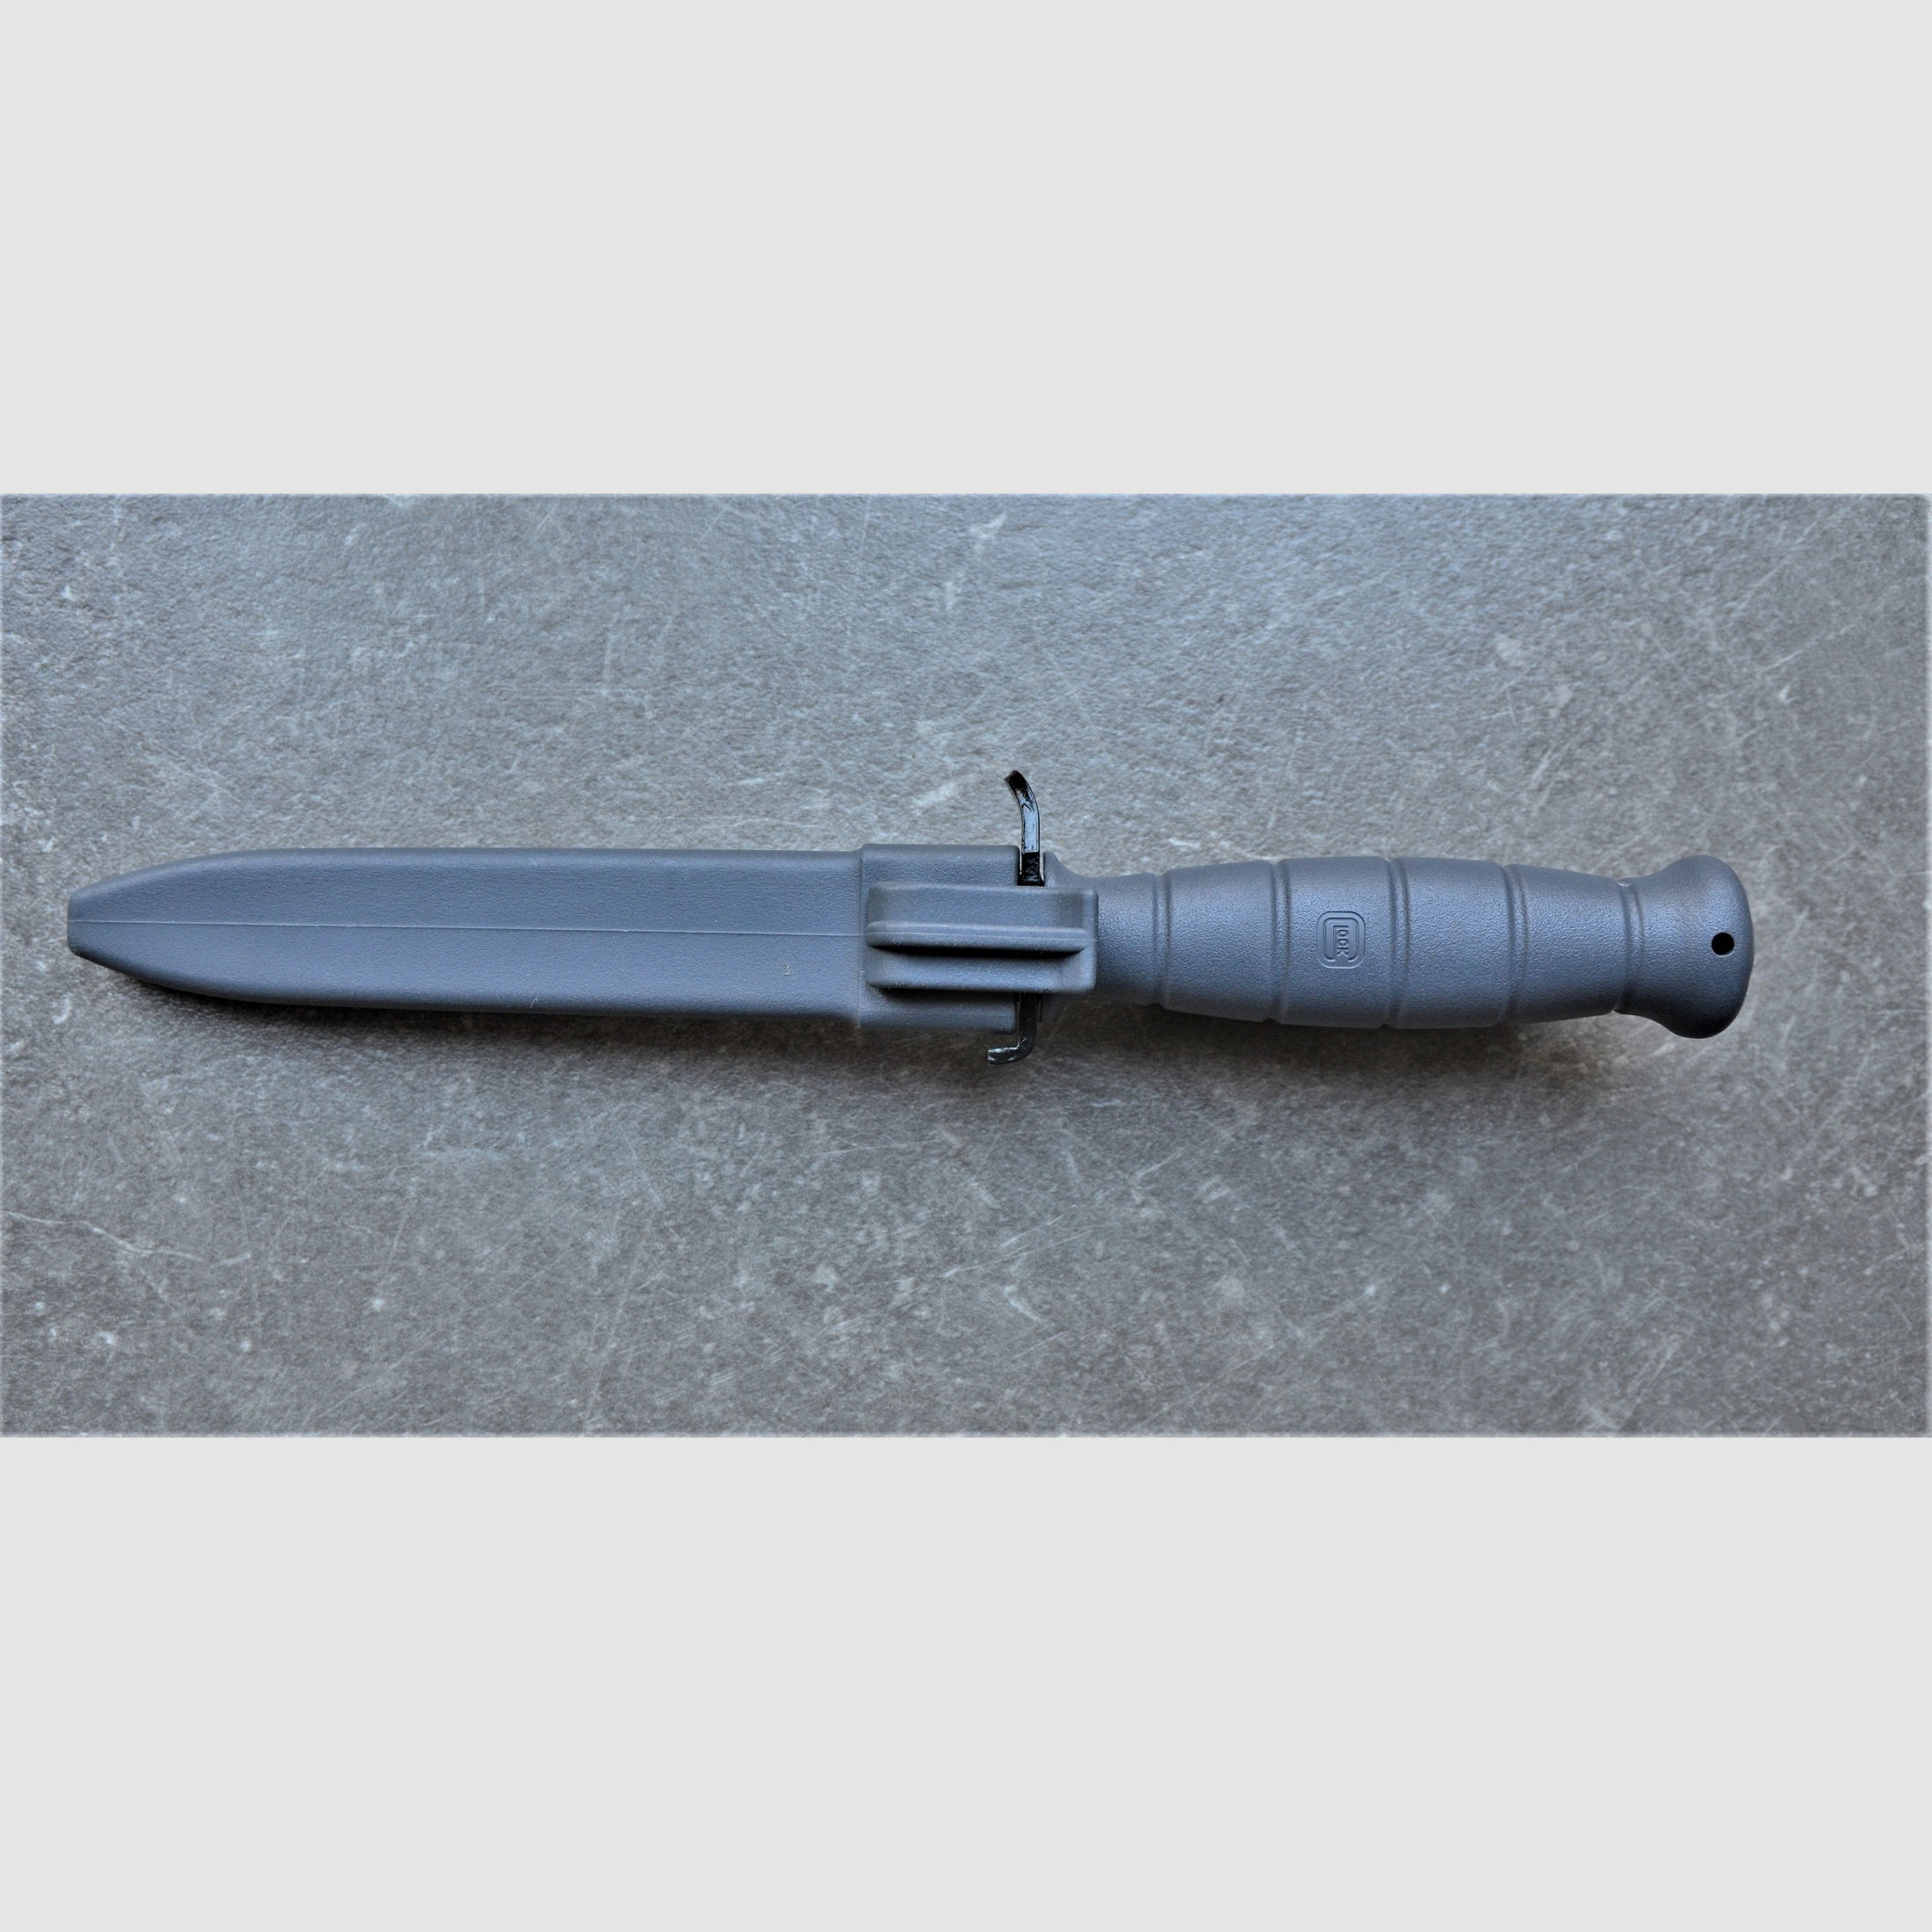 Glock Feldmesser FM 81 grau – Militärisches Mehrzweckmesser